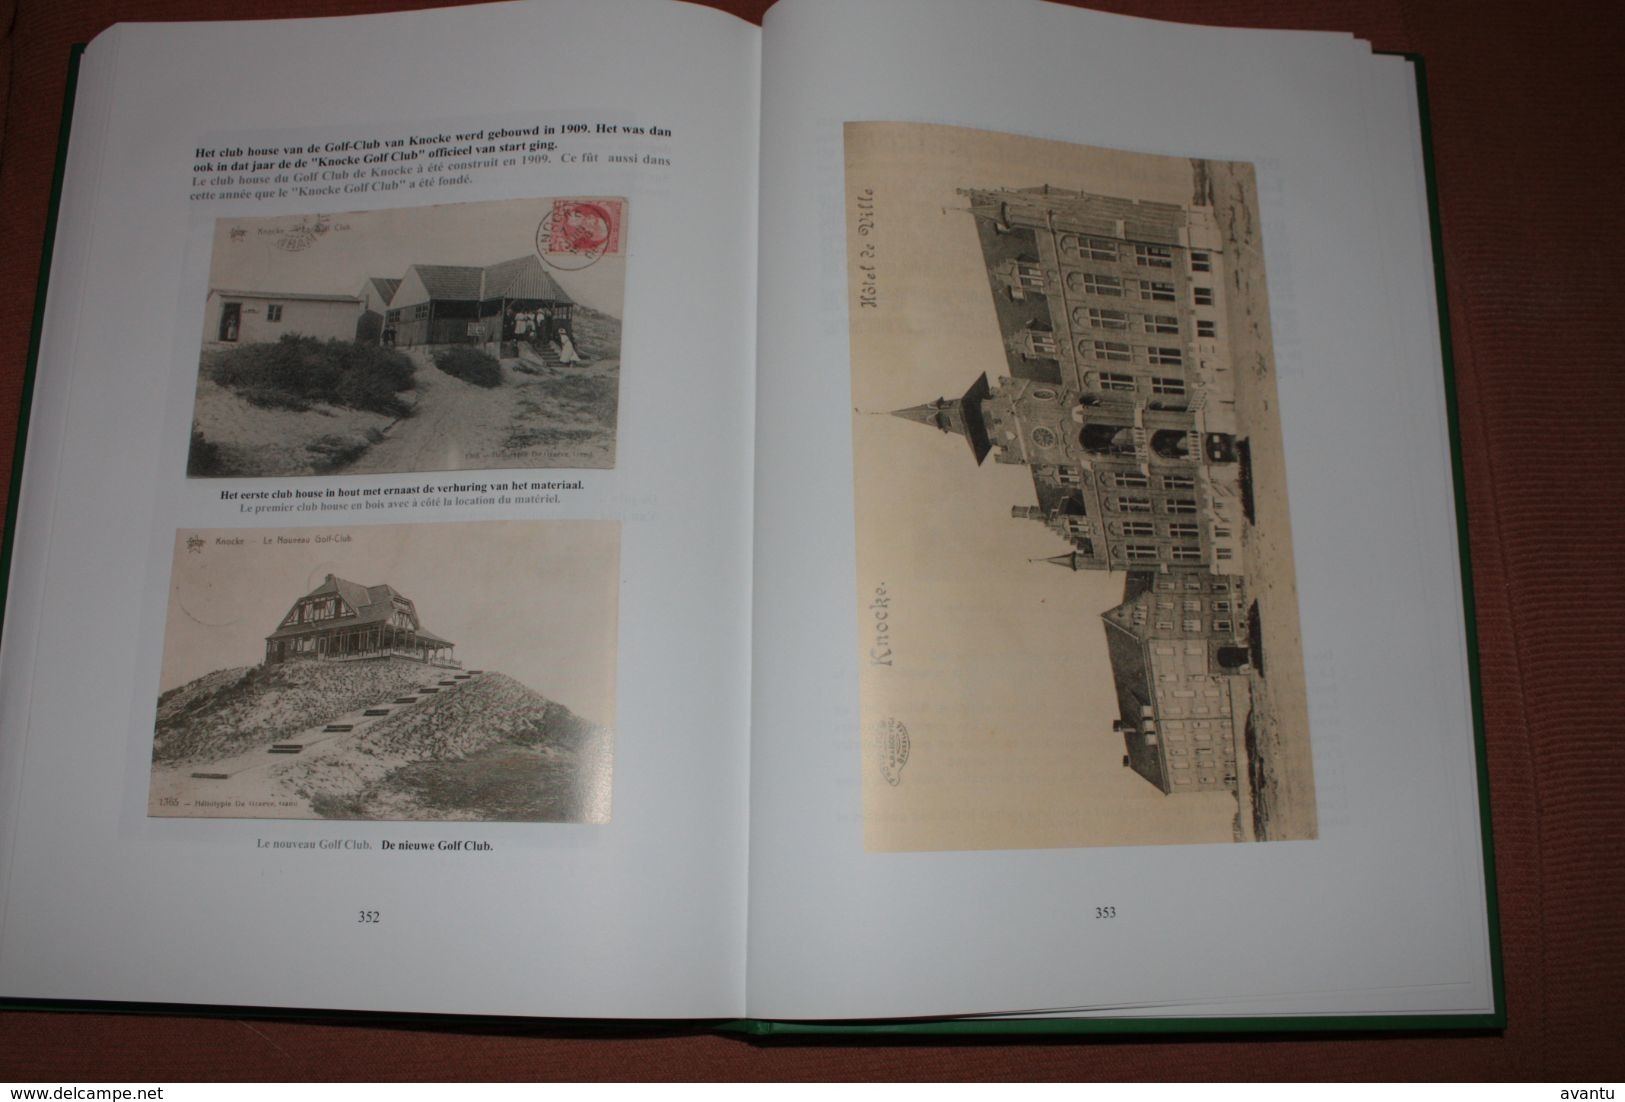 LA COTE BELGE / LA BELLE EPOQUE - images et l histoire des villes et communes le long du littoral -  370 pages bilingue